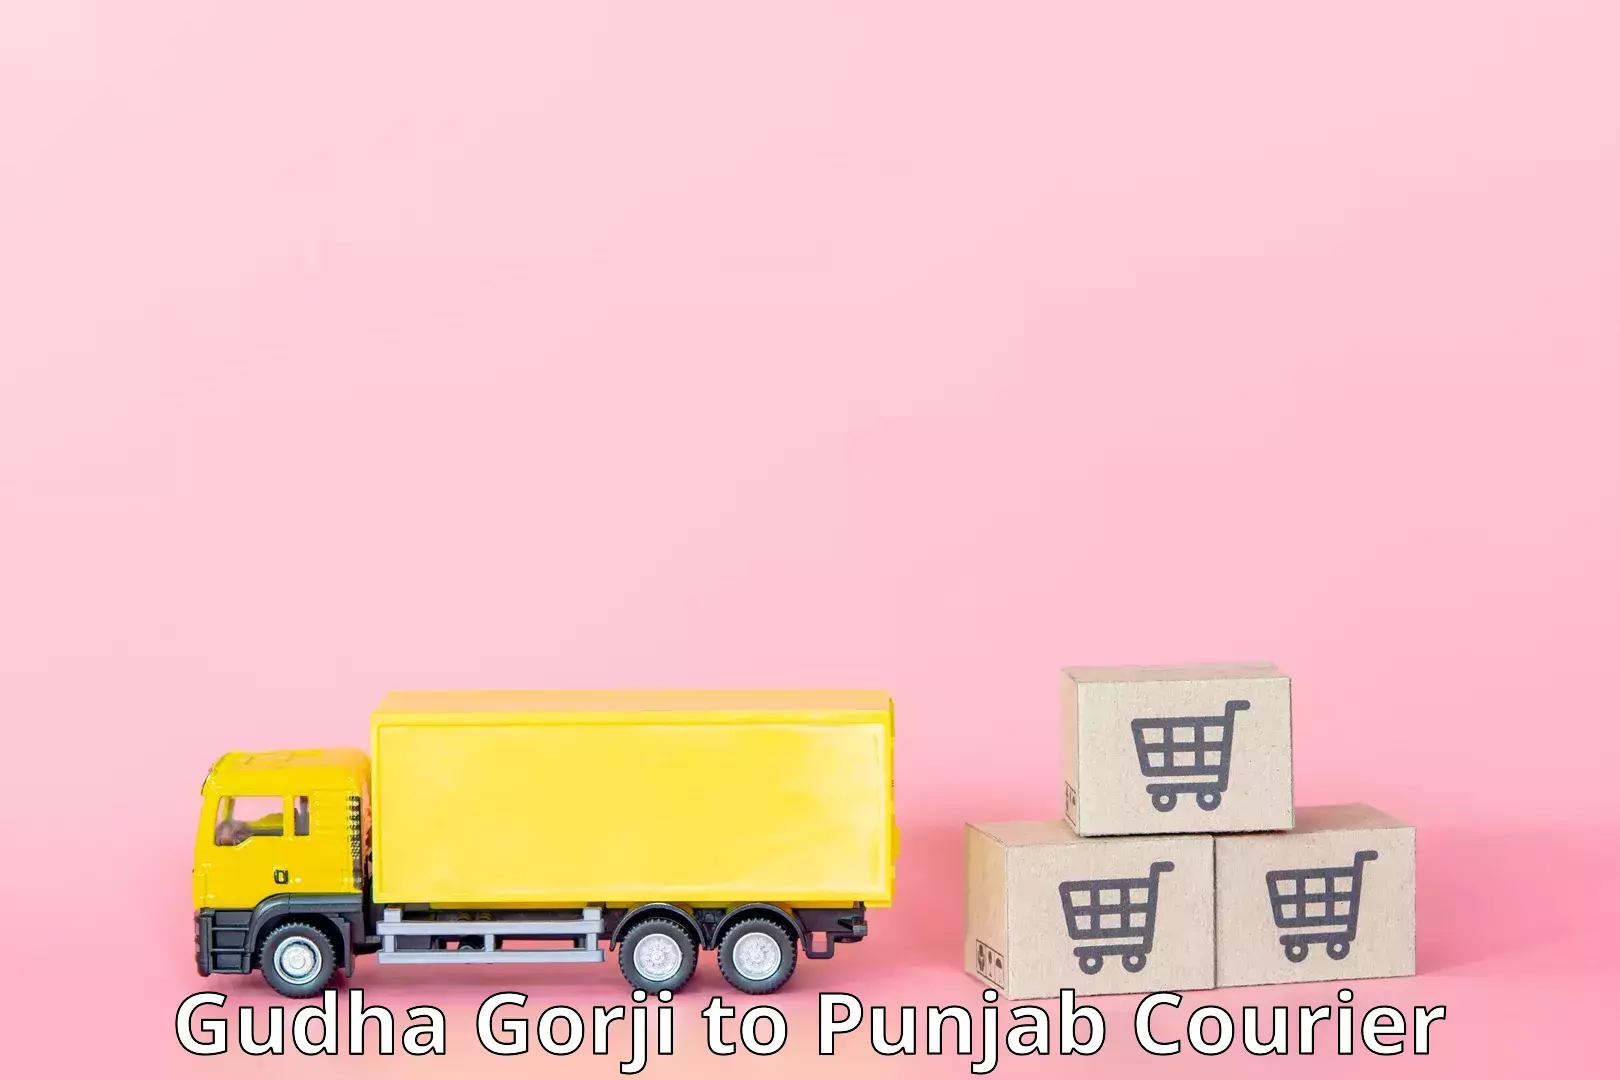 Special handling courier Gudha Gorji to Central University of Punjab Bathinda